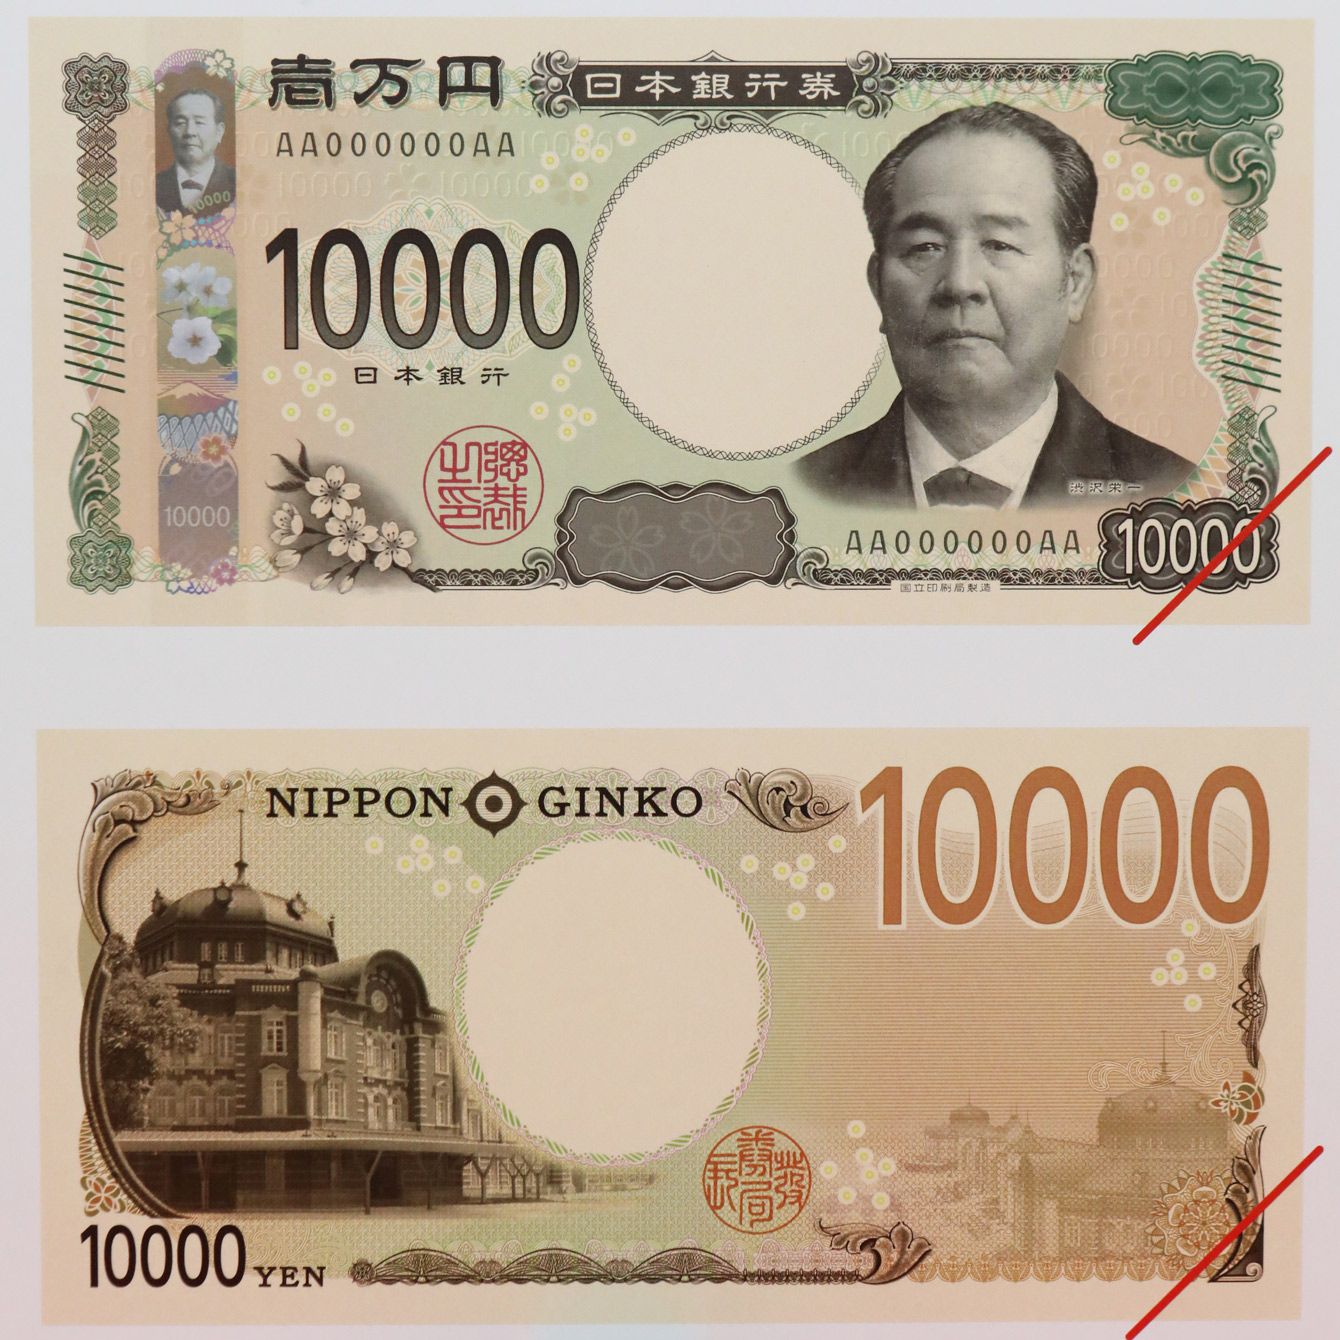 旧紙幣 福沢諭吉 新札 一万円札 - 貨幣